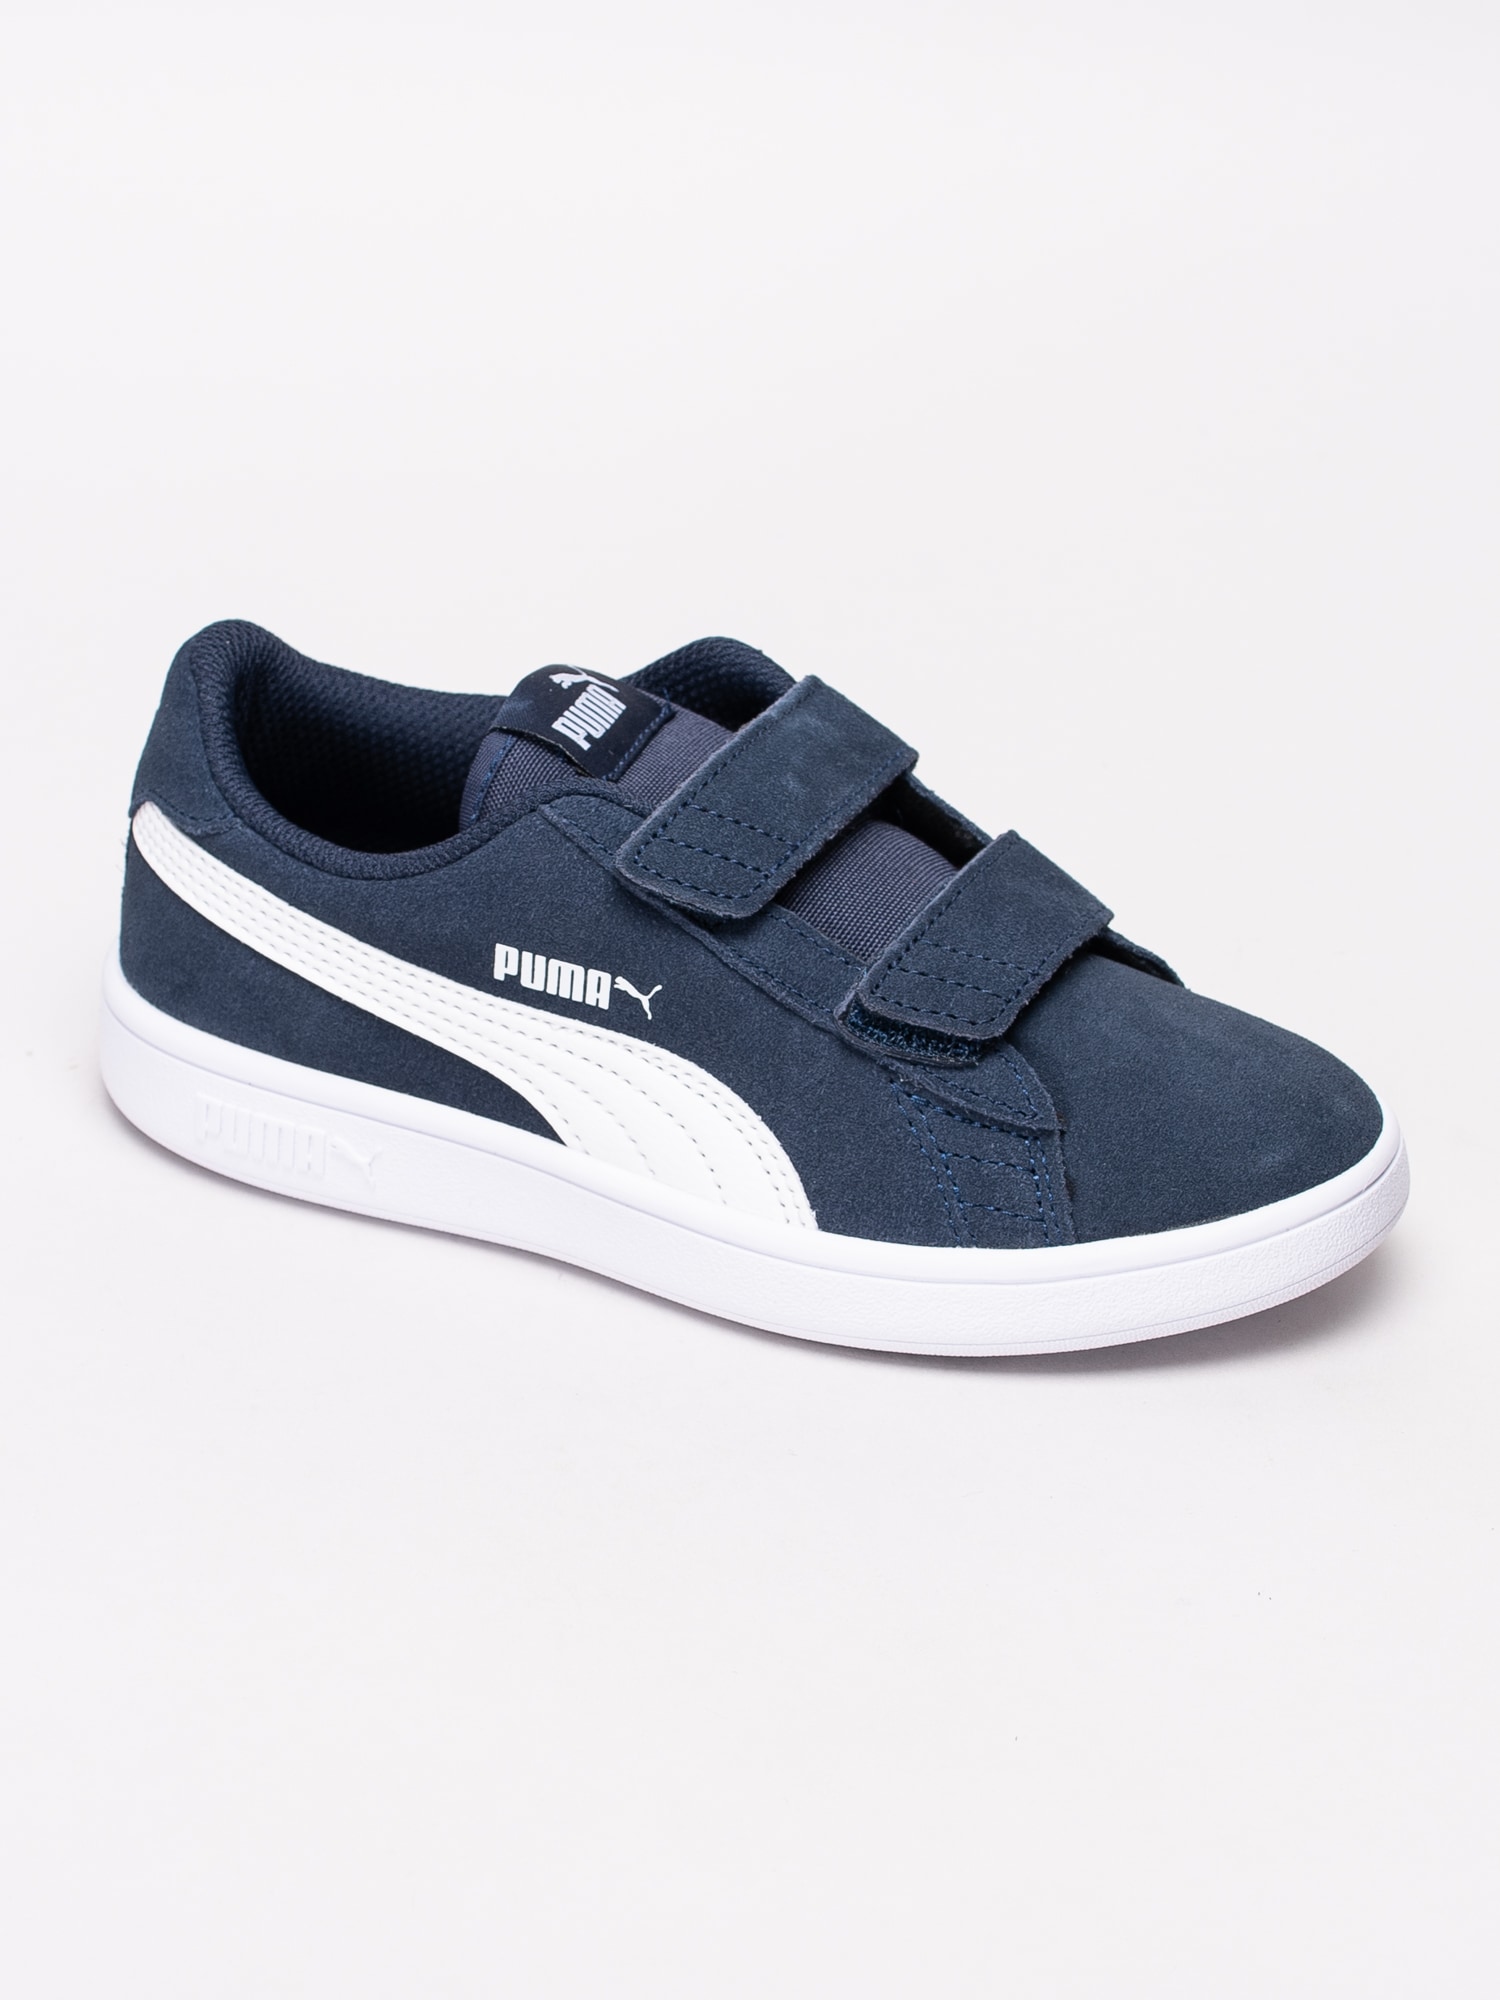 56191060 Puma Smash v2 SD 365177-02 mörkblå sneakers-1